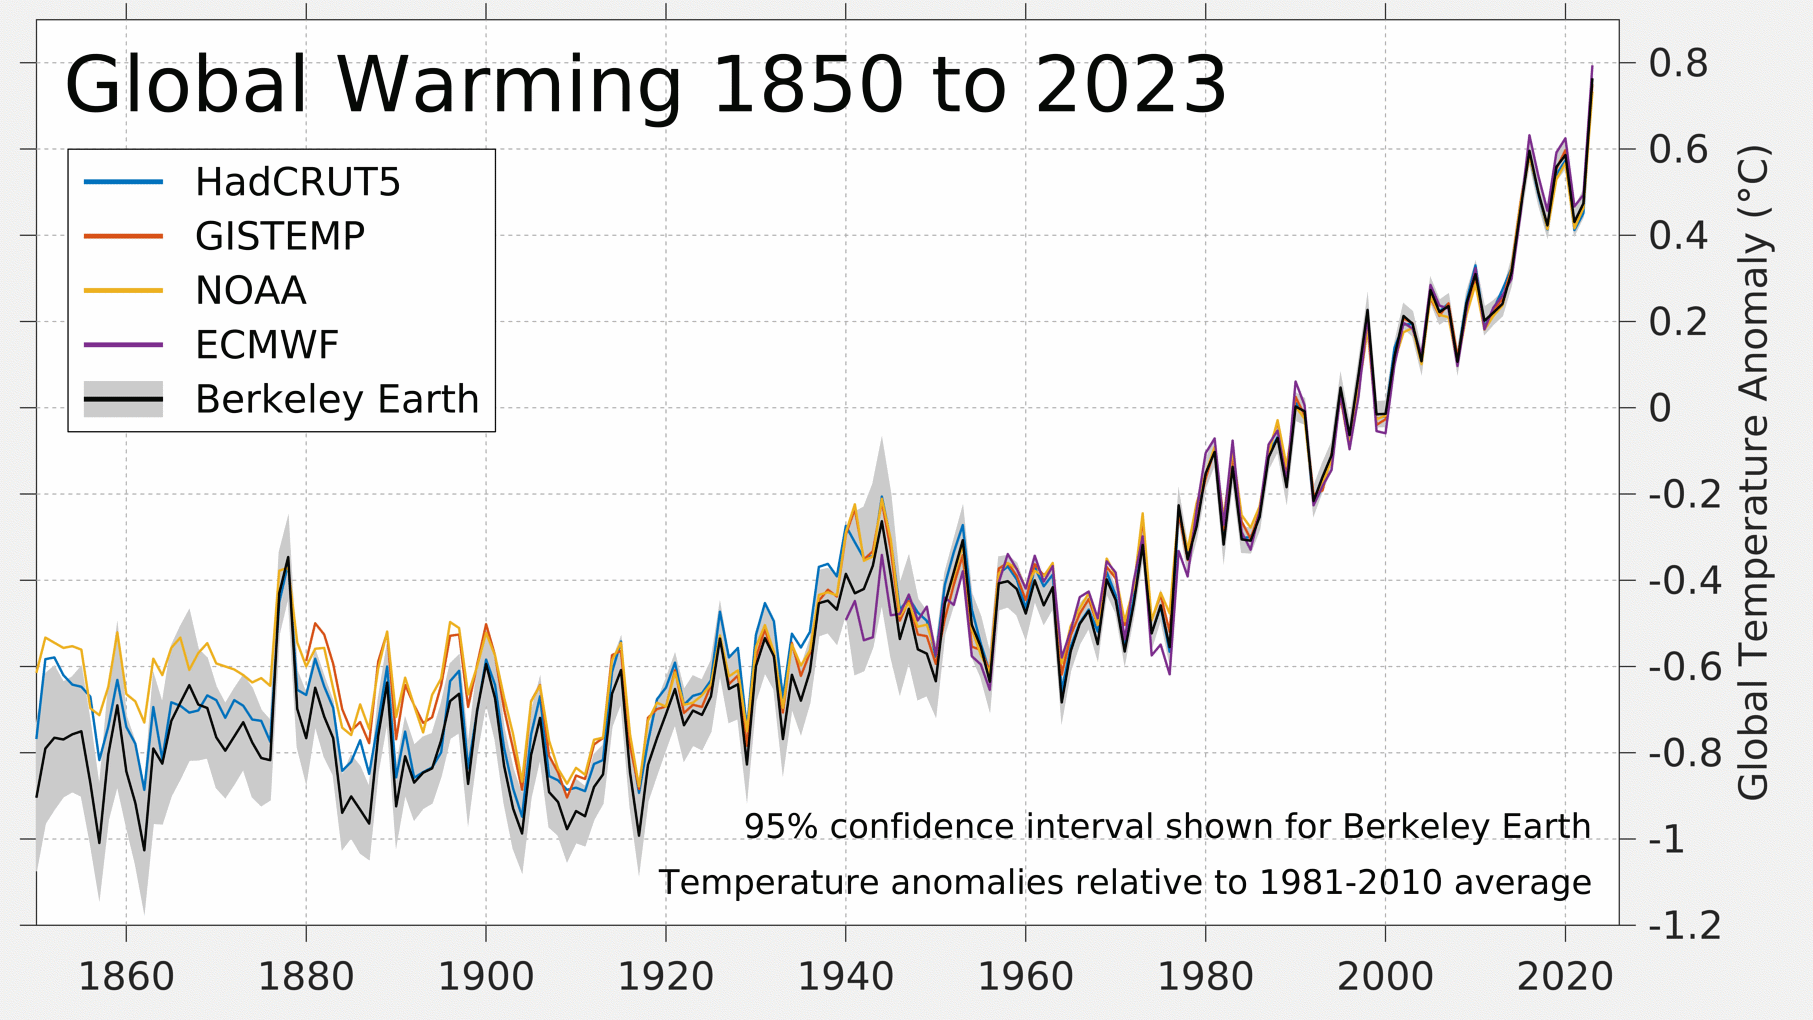 Különböző kutatócsoportok számításai az eddig lezajlott globális felmelegedésről. A hőmérsékleti anomáliát az ábra az 1981-2010 közötti időszakhoz viszonyítja